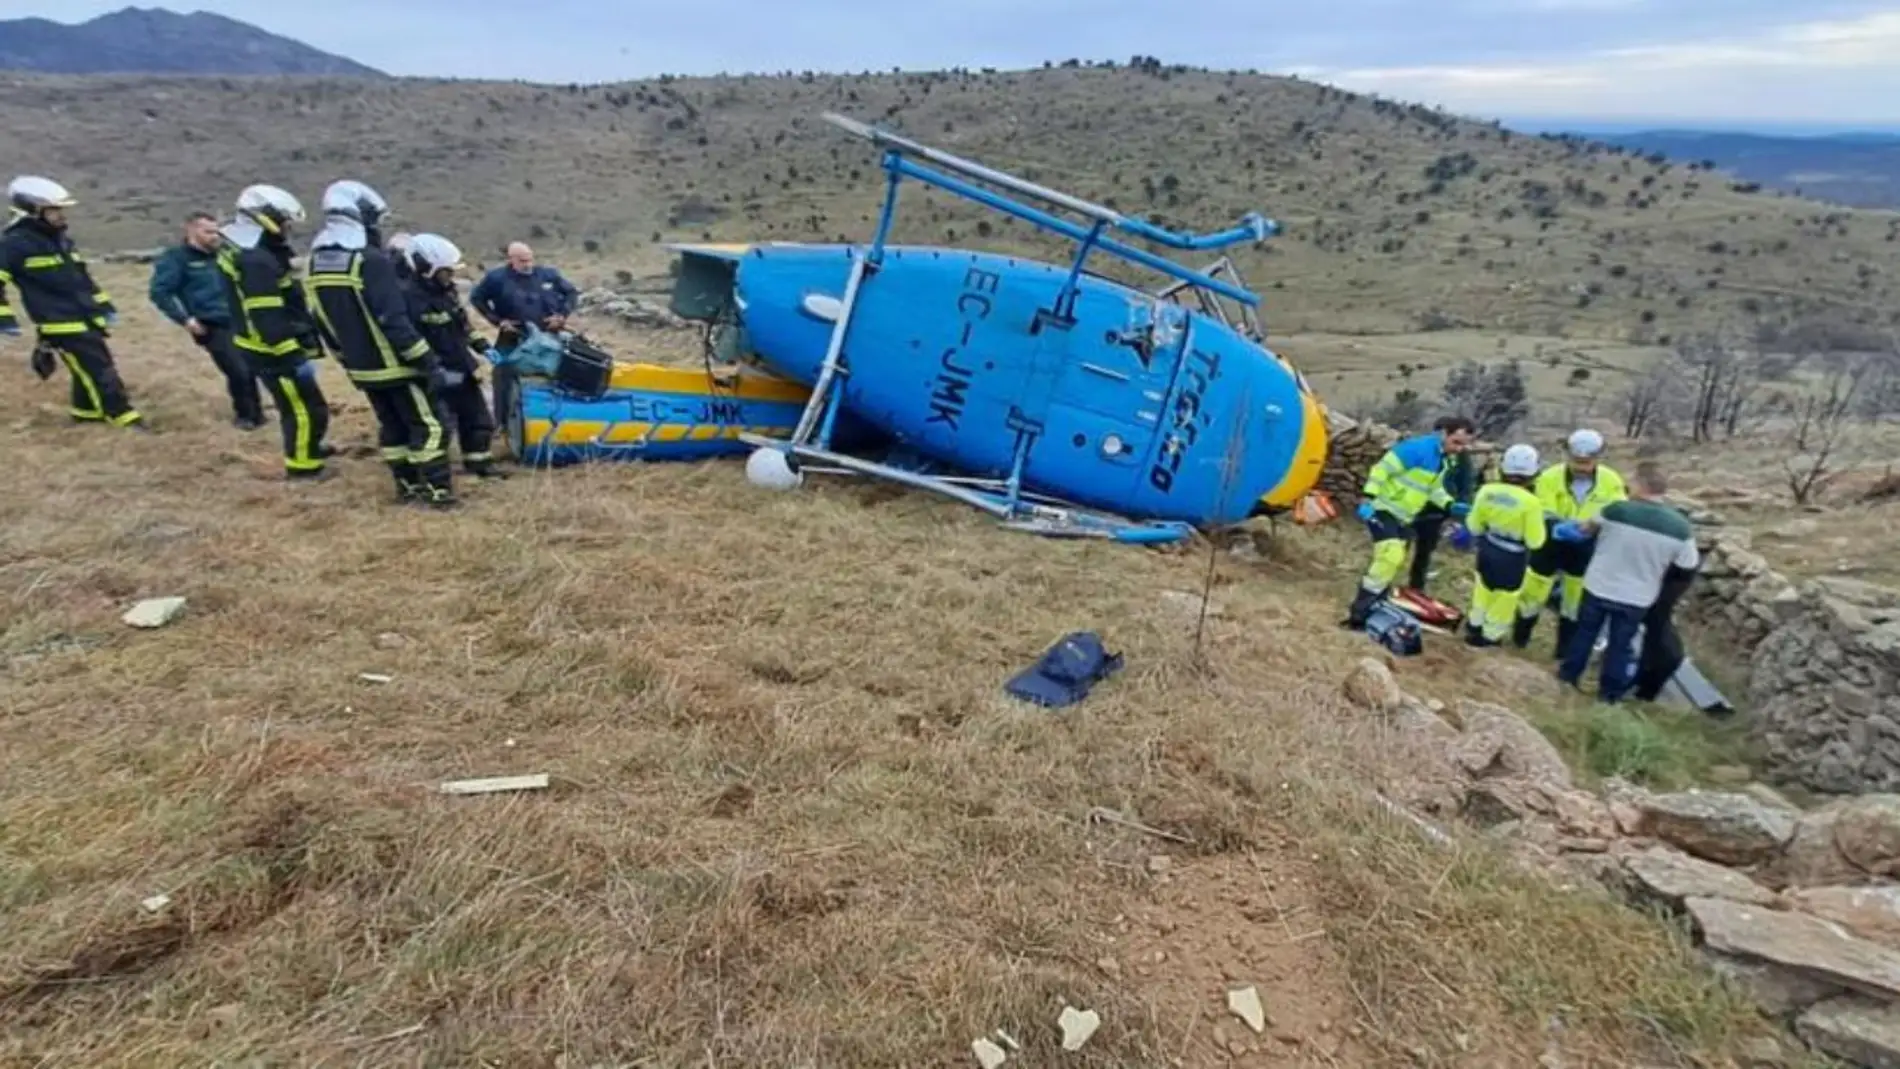 El piloto del helicóptero de la DGT estrellado dio positivo en cocaína y metanfetaminas